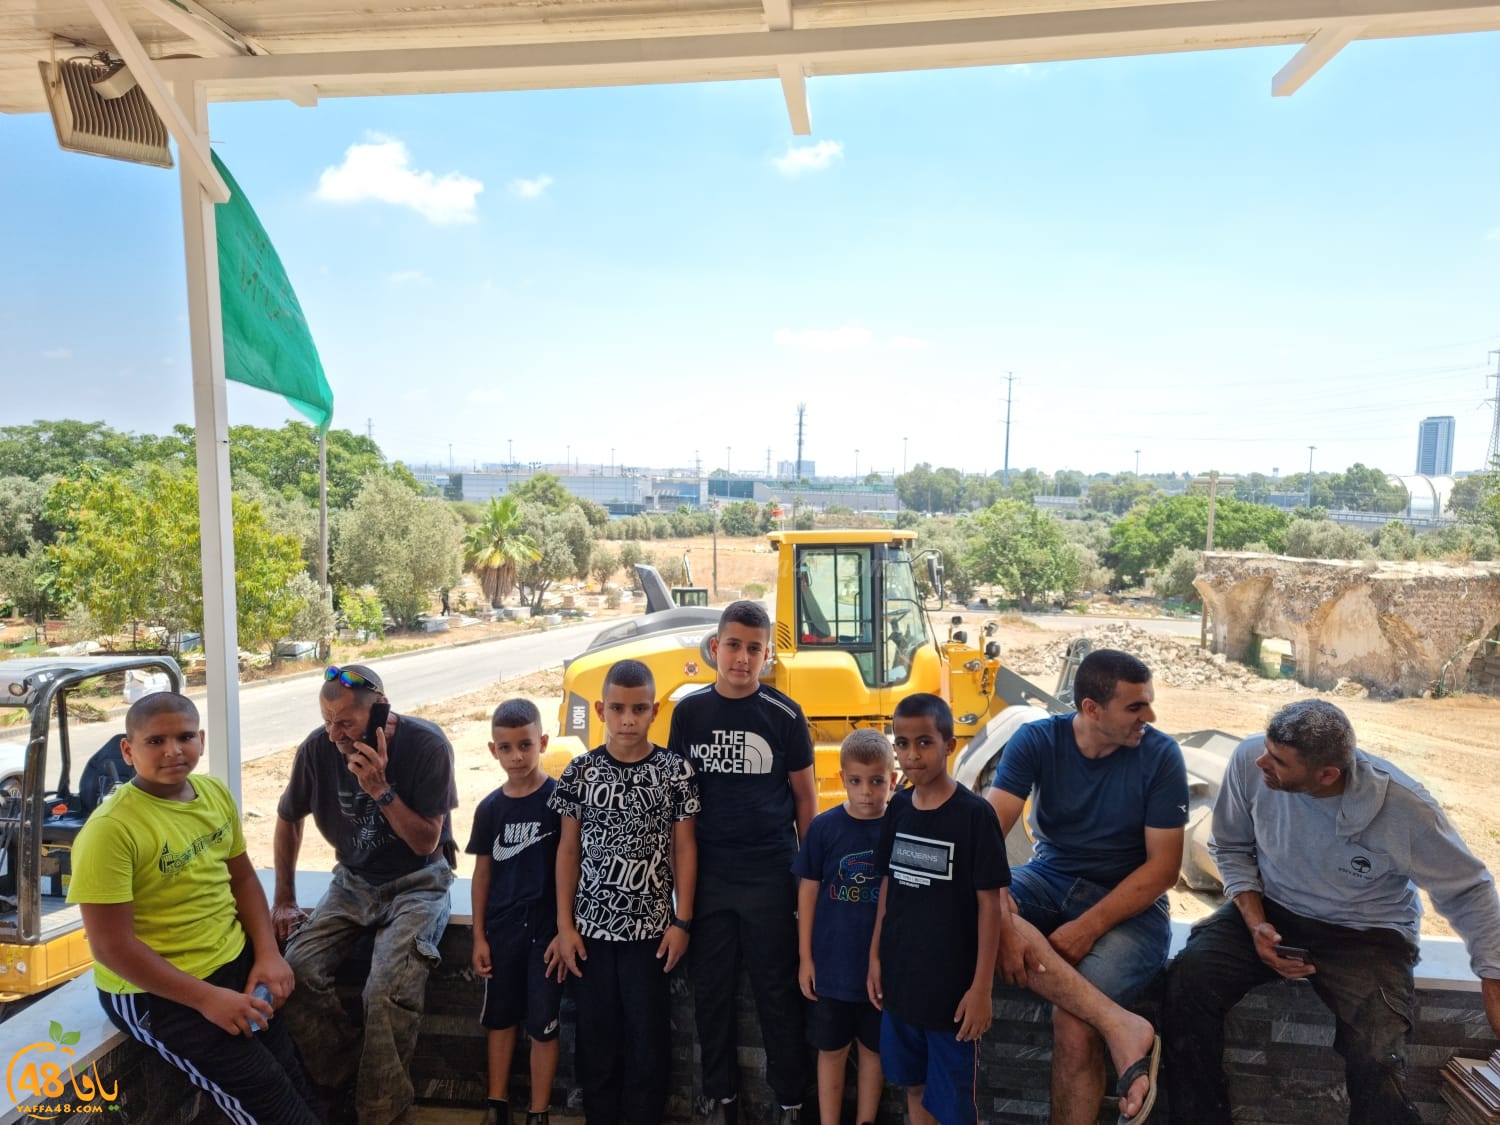  يافا: لجنة اكرام الميت تُنظم معسكراً لتنظيف وصيانة مقبرة طاسو